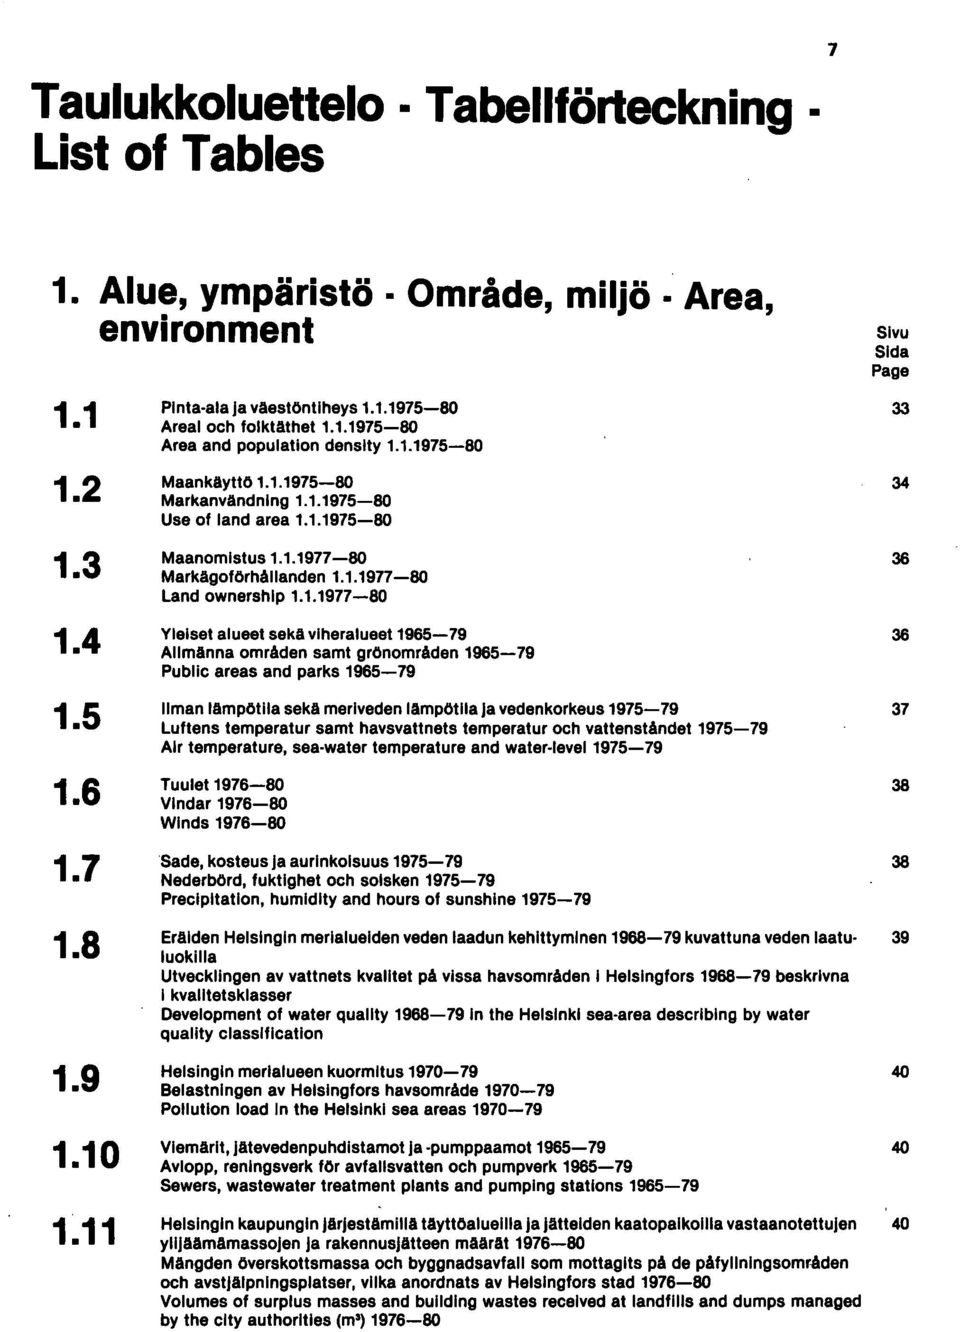 1.1971-80 Yleiset alueet sekä viheralueet 1965-79 36 Allmänna områden samt grönområden 1965-79 Public areas and parks 1965-79 Ilman lämpötila seka meriveden lämpötila ja veden korkeus 1975-79 37